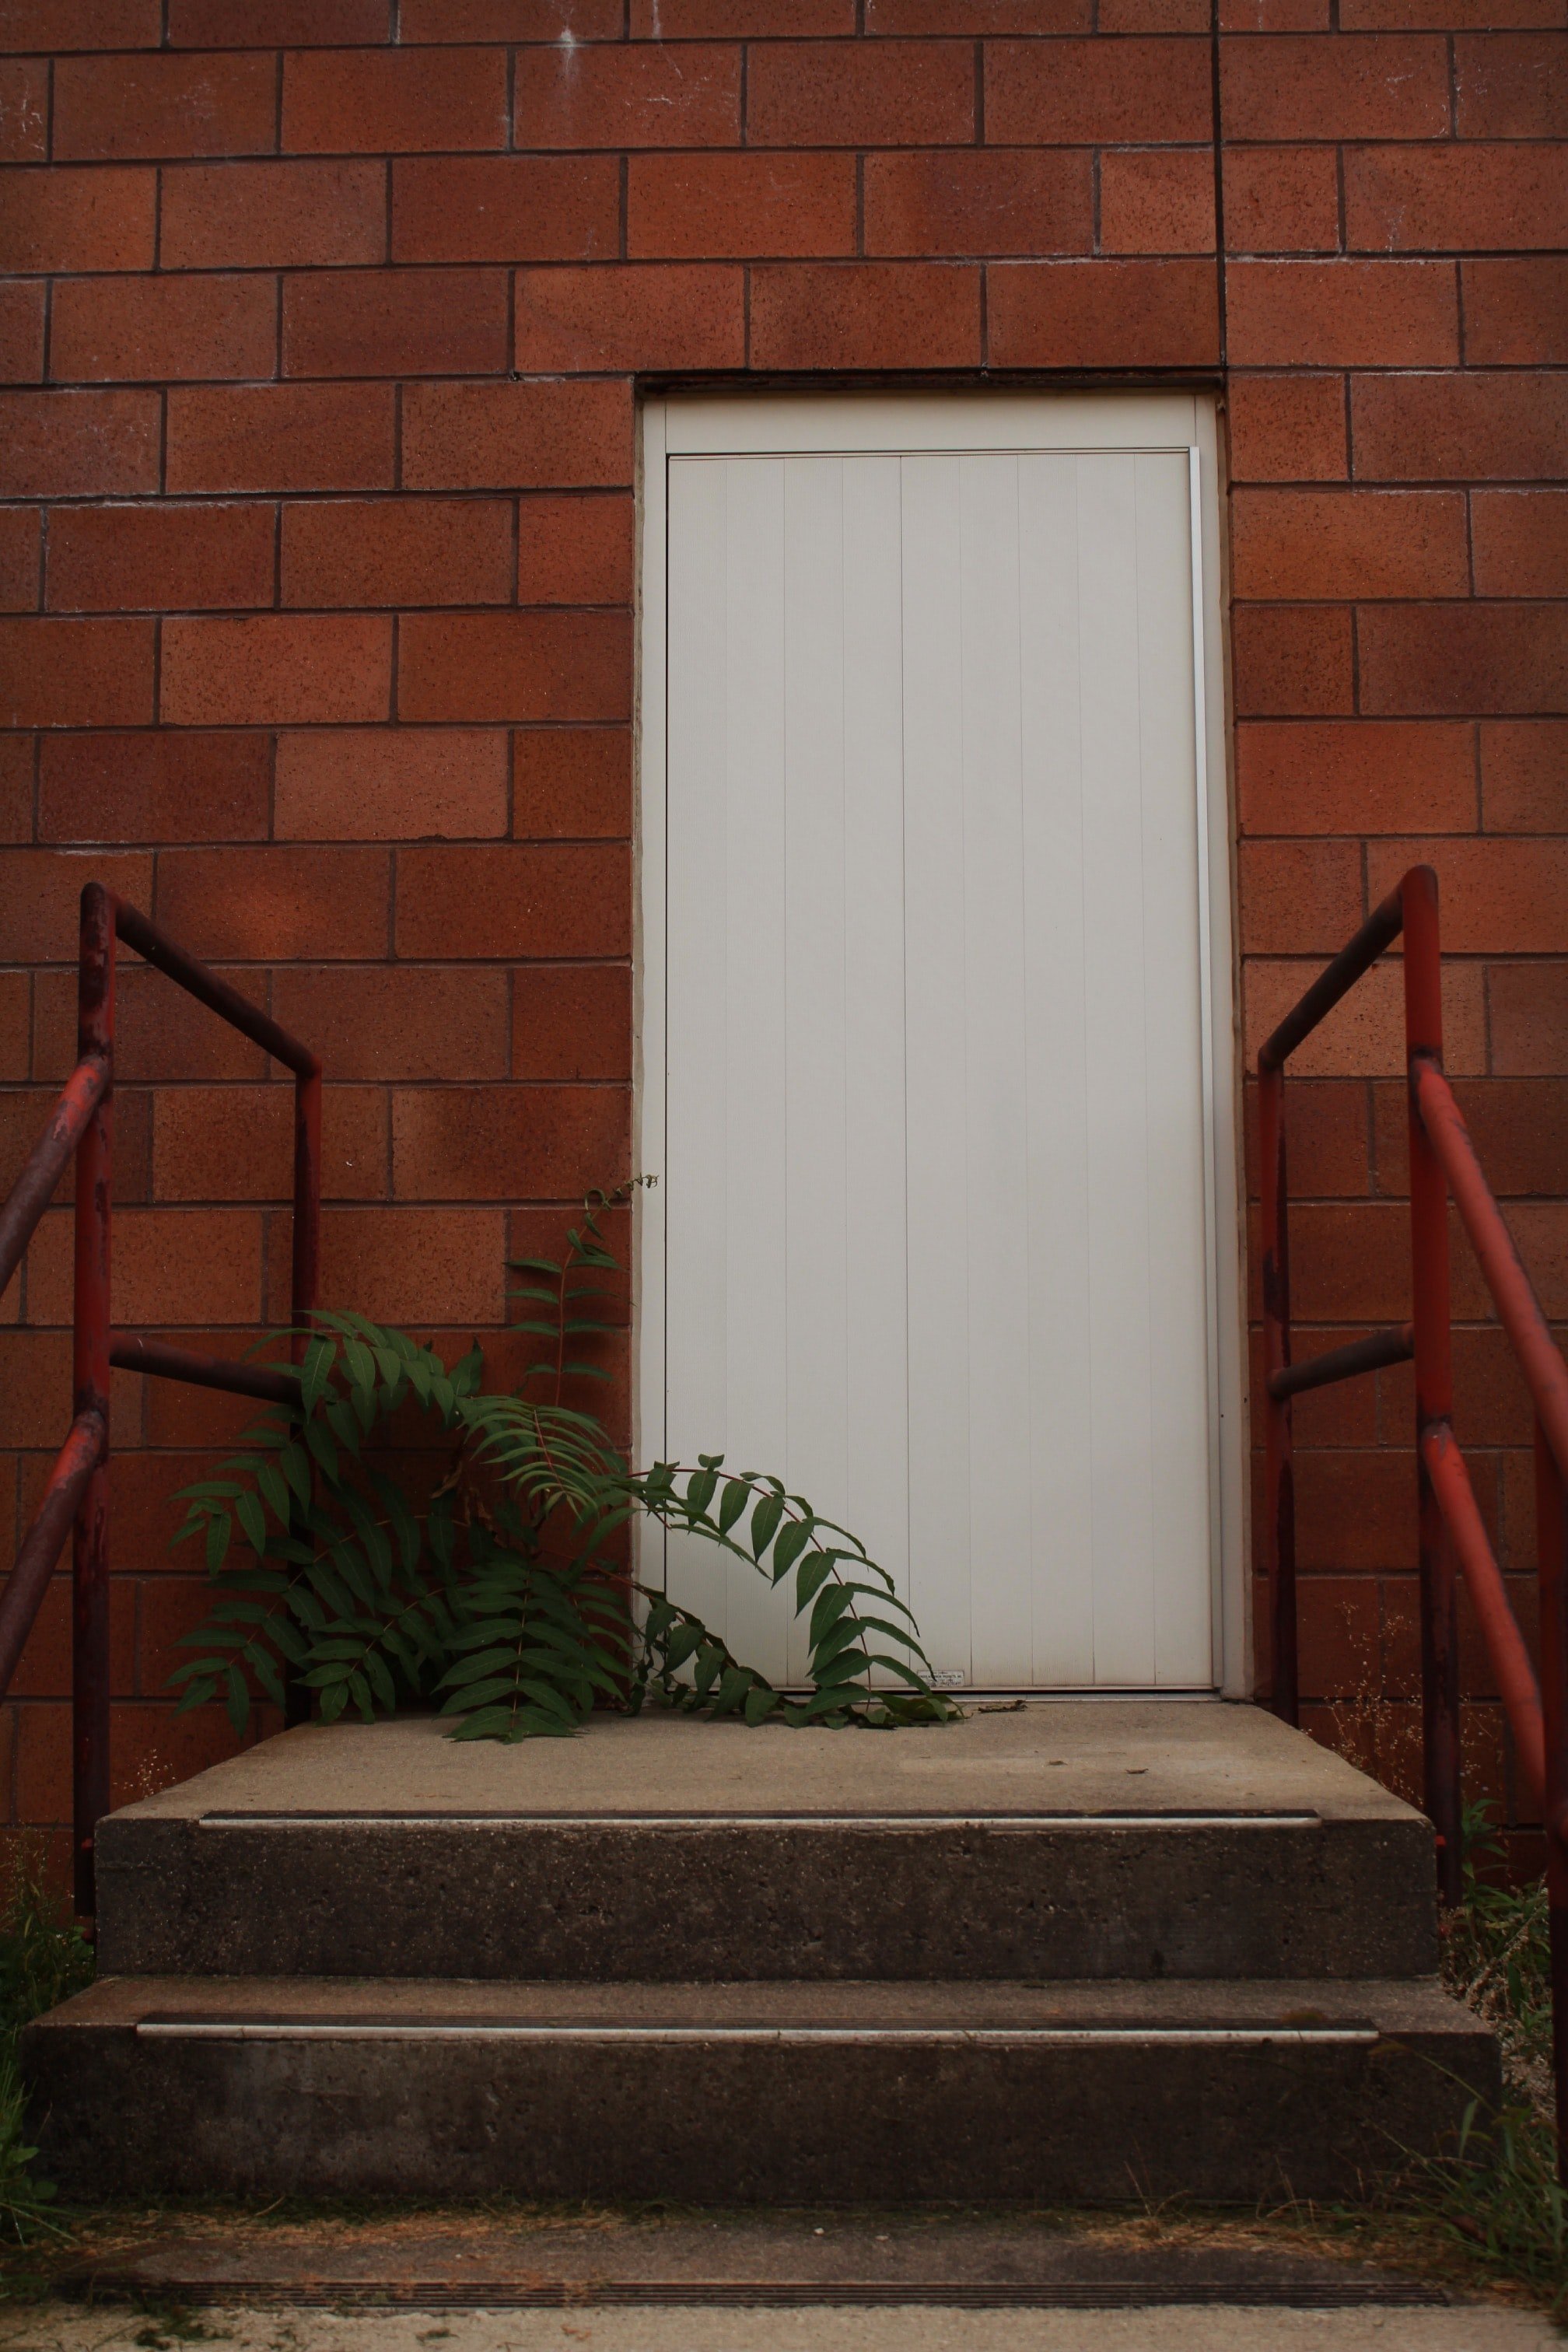 White door and a fern | Source: Unsplash